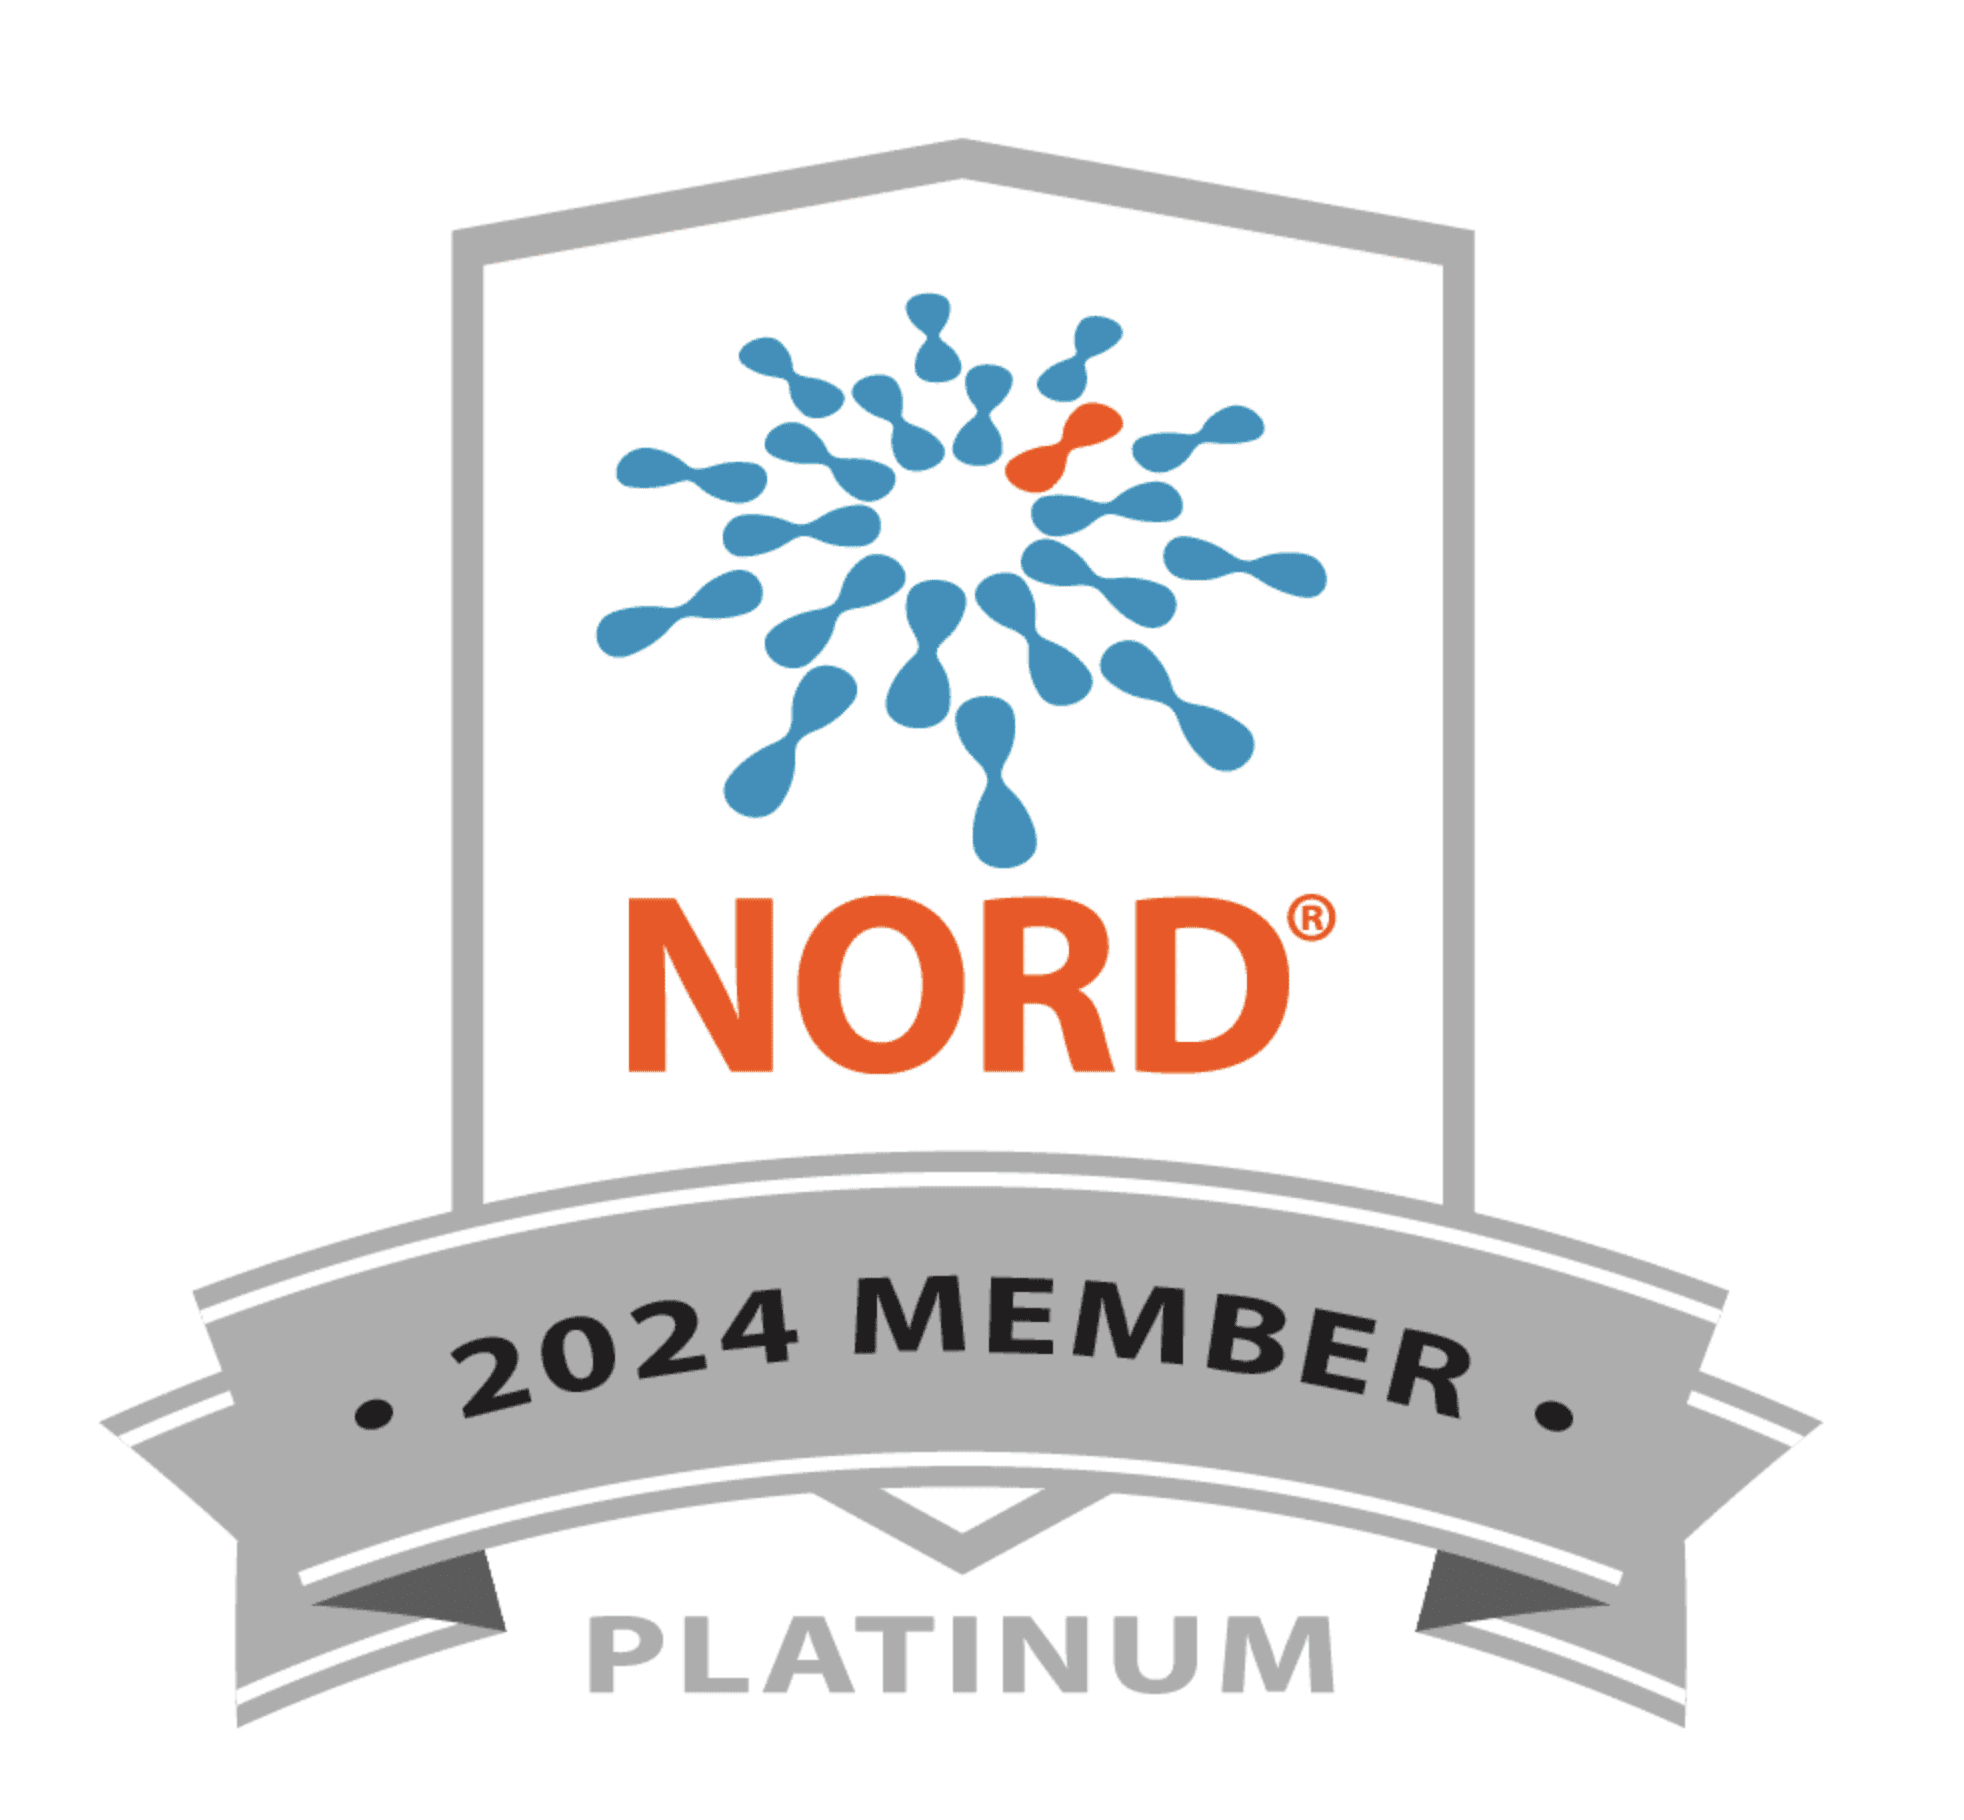 NORD - 2024 Member